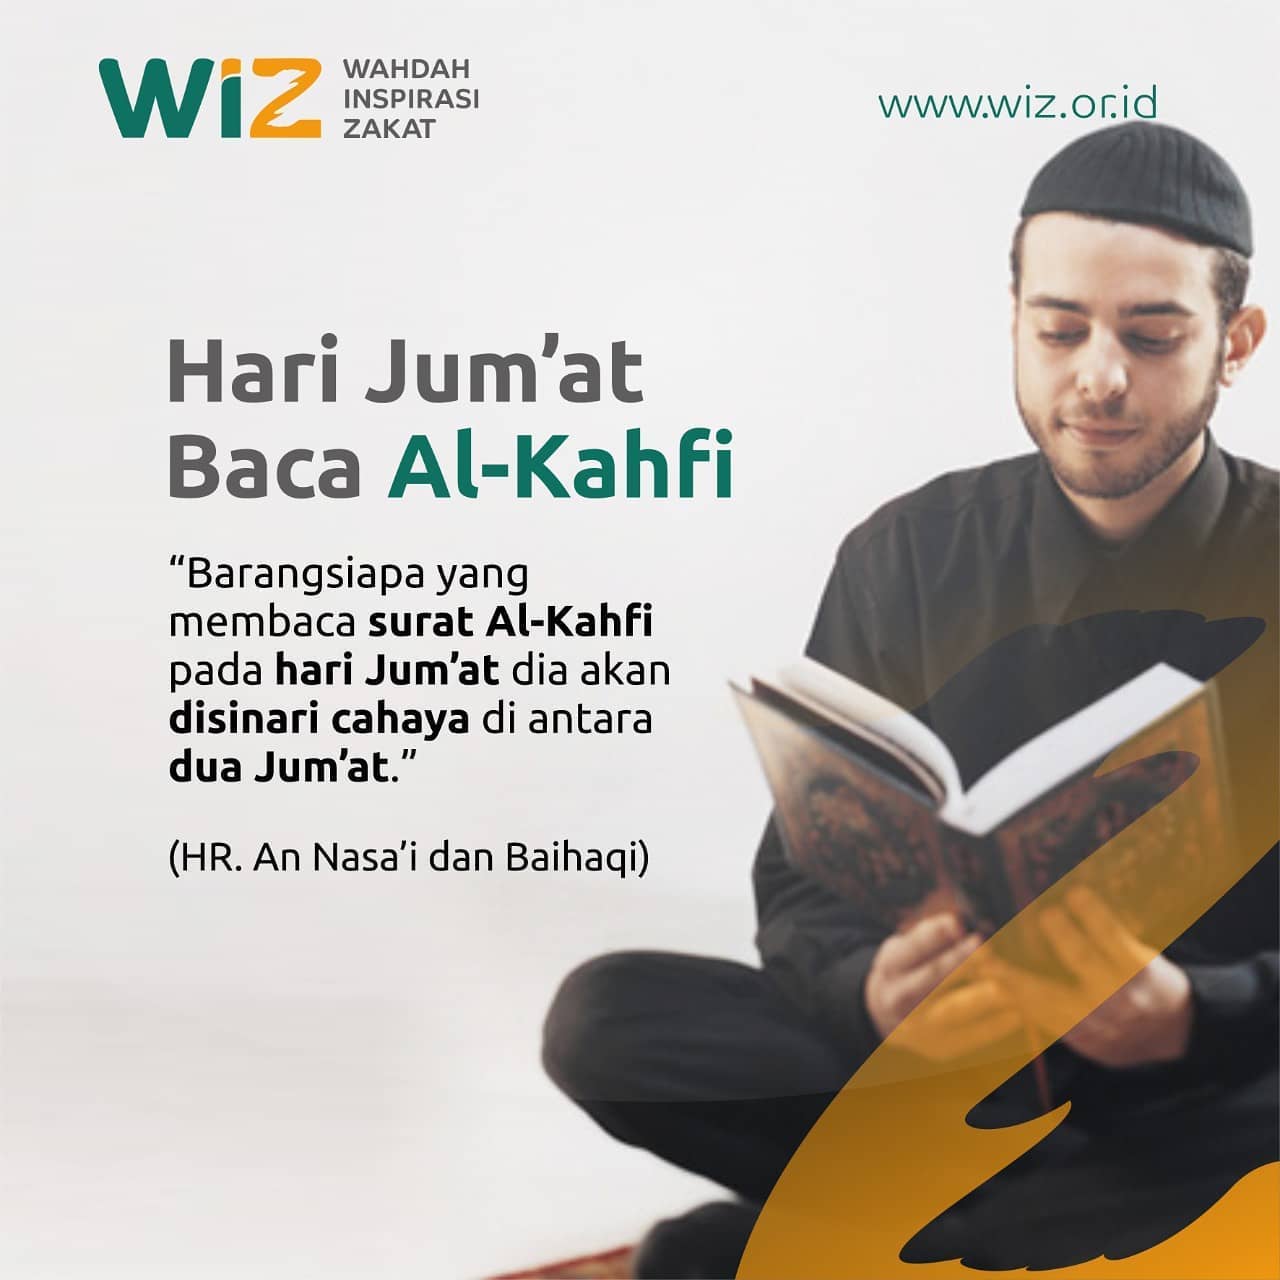 Hari Jumat Baca Al Kahfi Wahdah Inspirasi Zakat